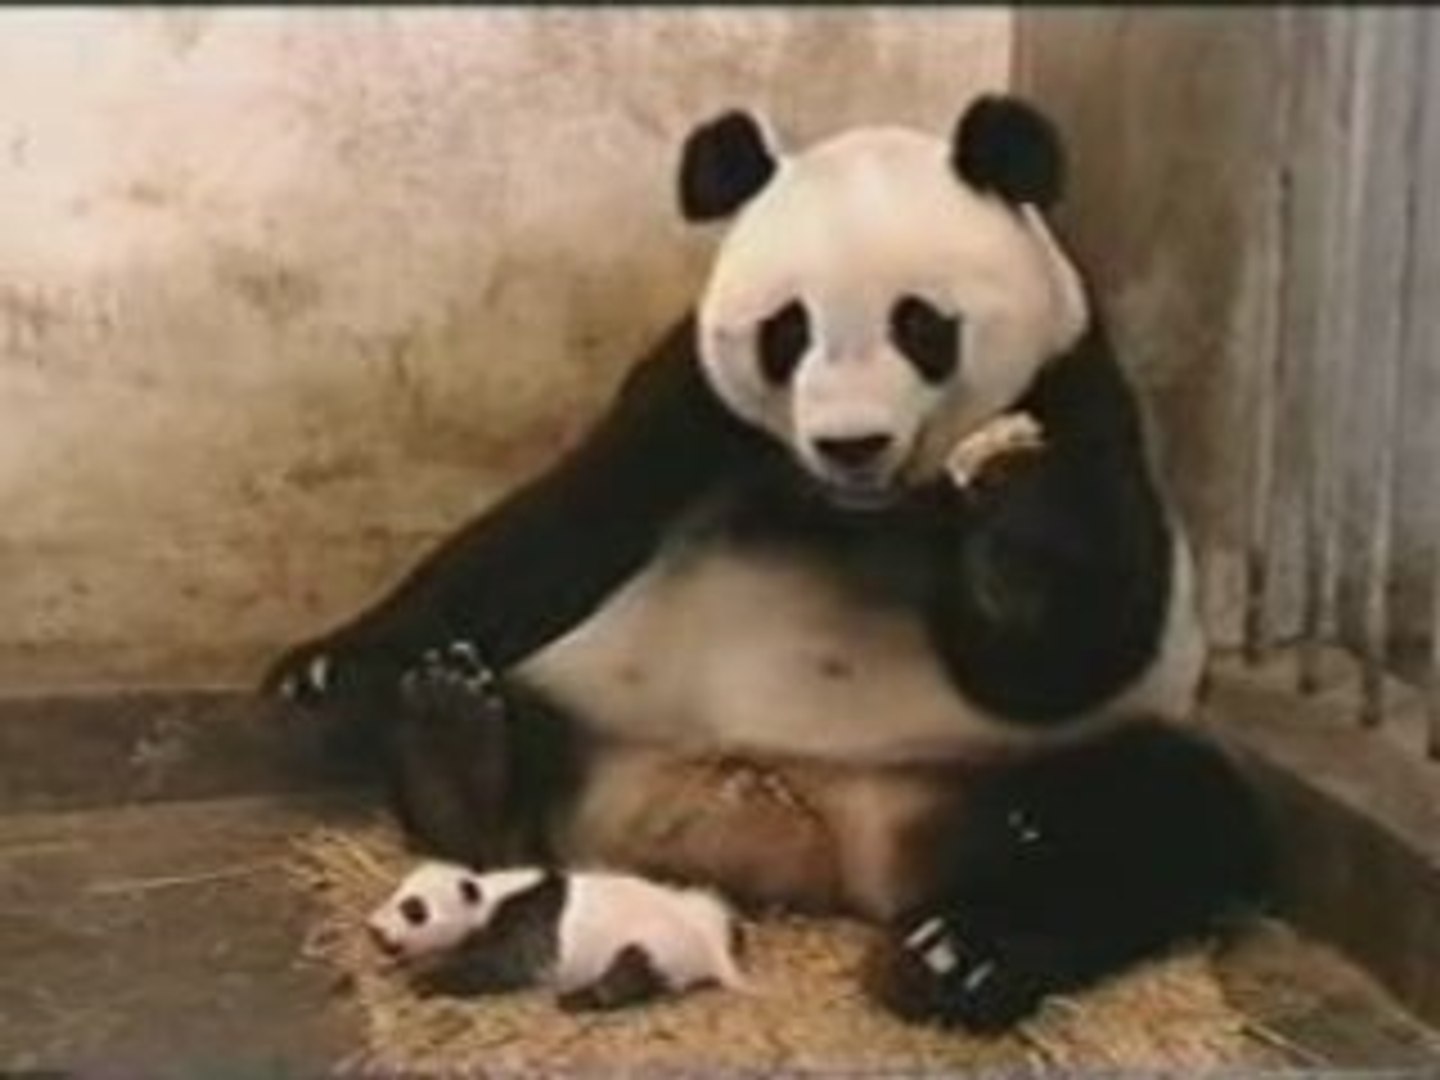 Sneezing panda bear HILARIOUS - video Dailymotion